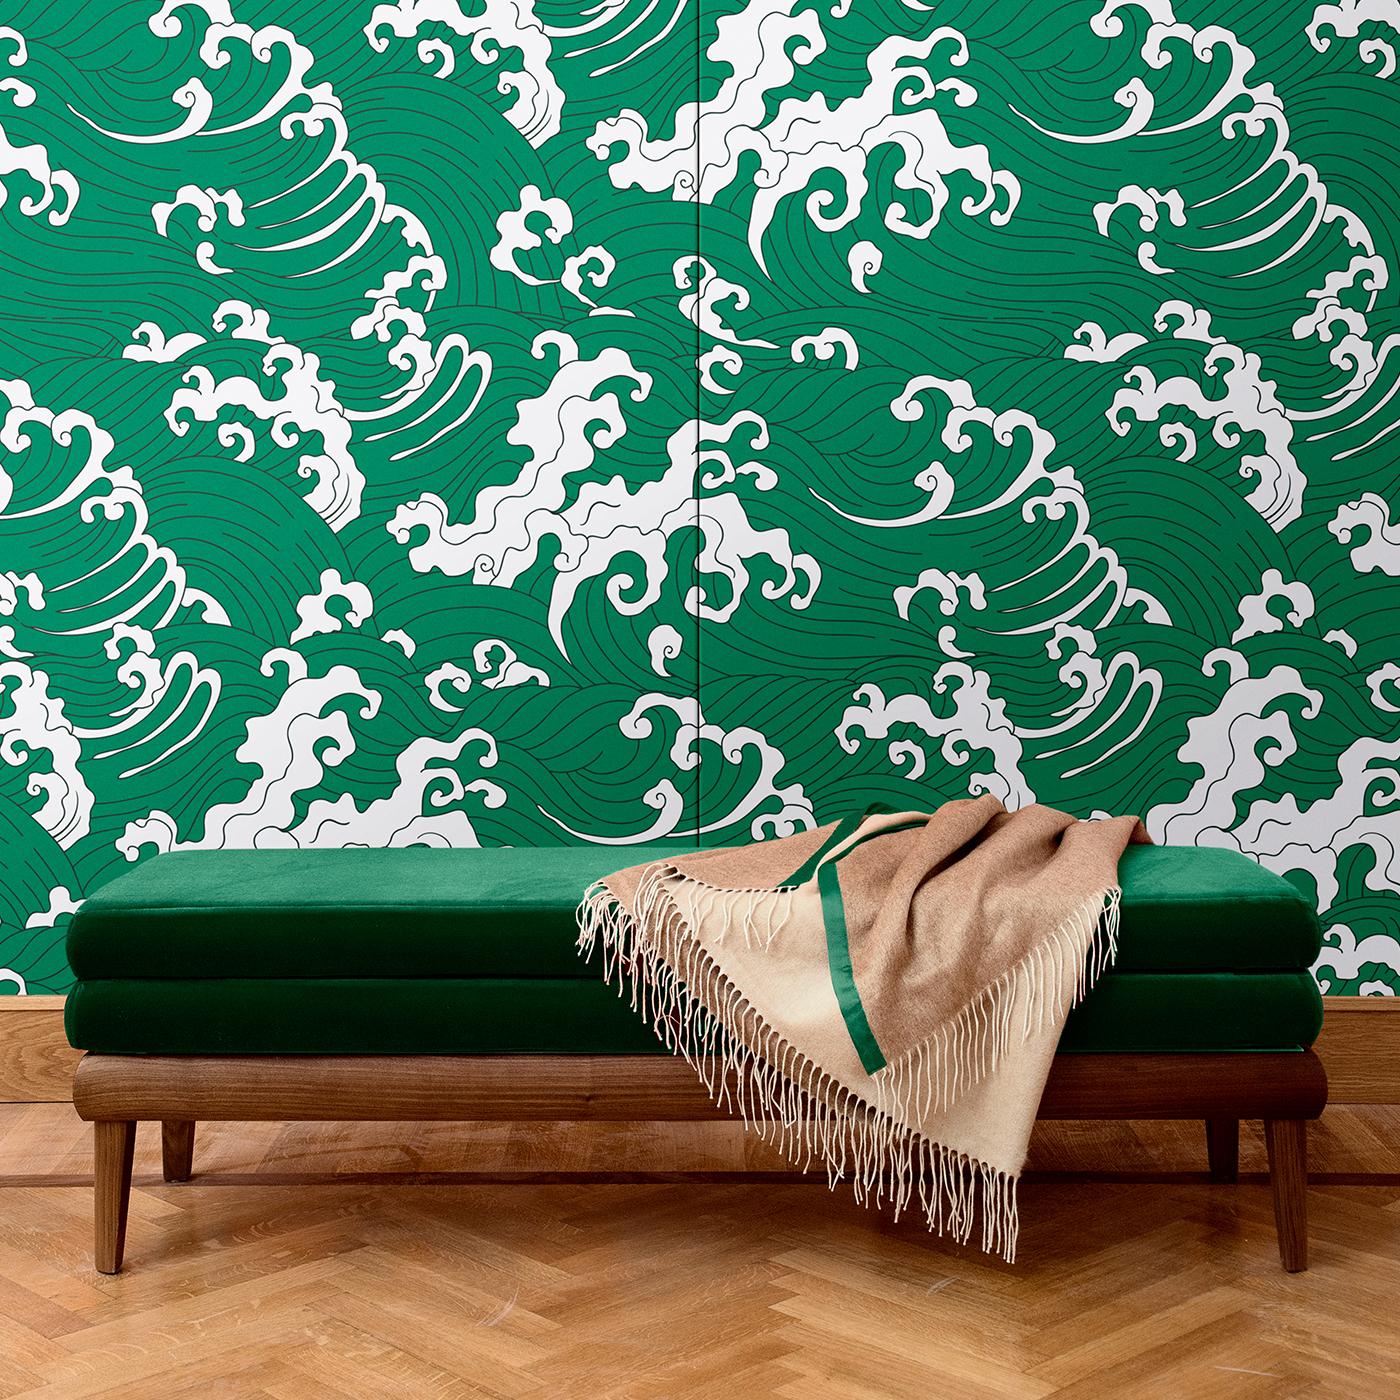 Dieser elegante Wandbehang wurde aus Seide und Baumwolle gefertigt und ist Teil der Kollektion Waves. Inspiriert von den ikonischen Meeresszenen der traditionellen japanischen Kunst, wird ein stürmisches Meer in Grün von weißem Schaum unterbrochen,